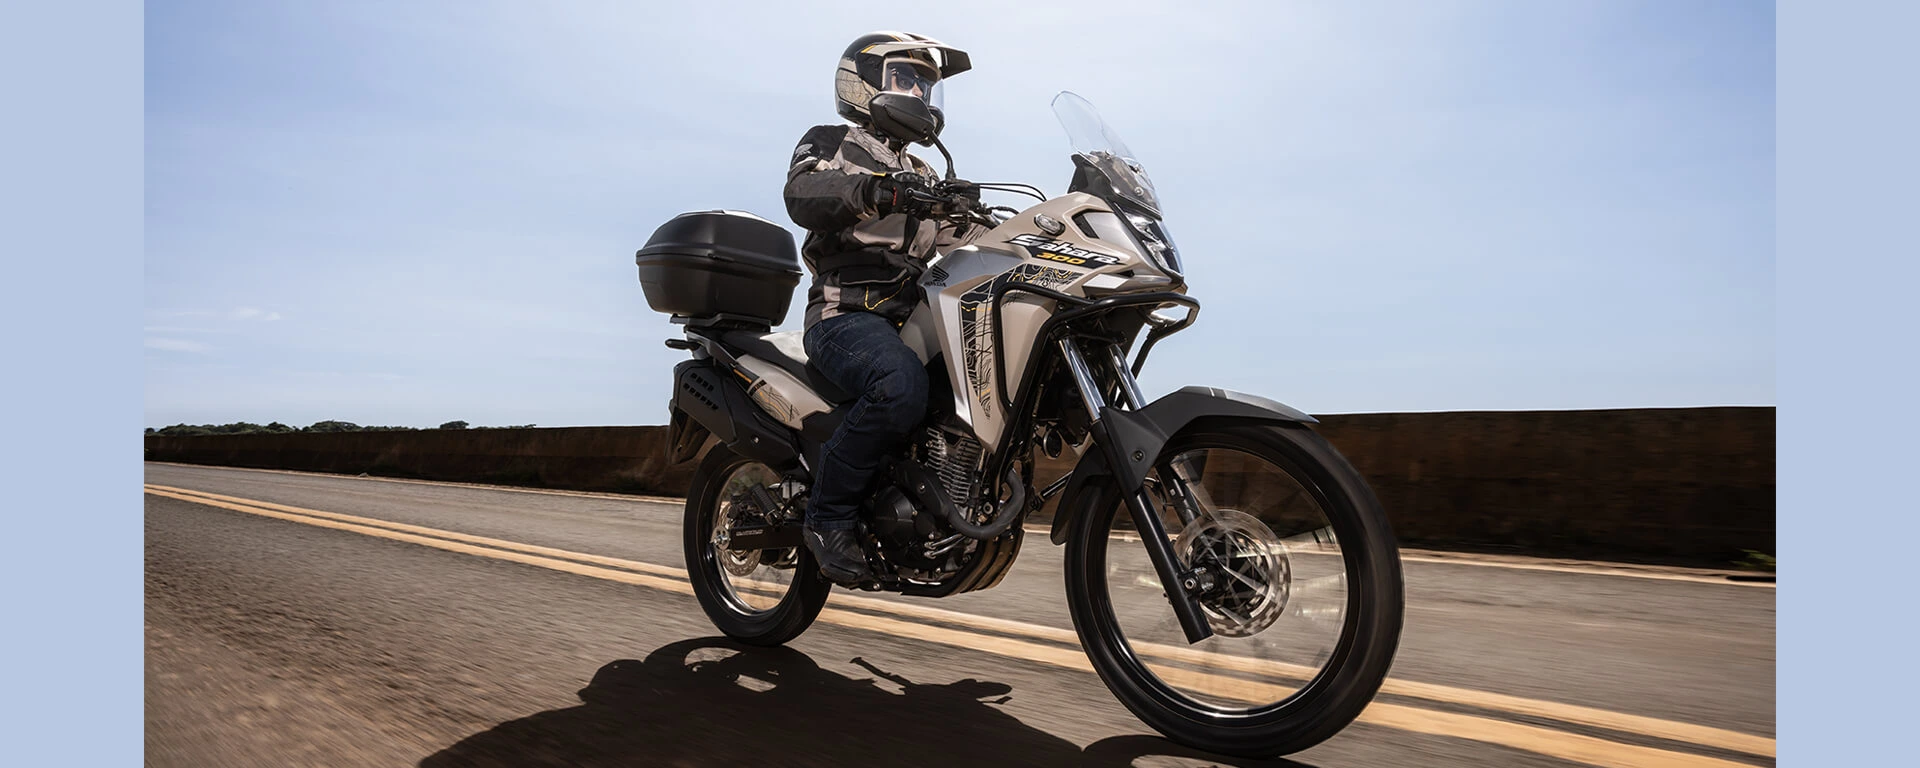 Homem em moto exaltando design da Honda Sahara 300 em estrada de asfalto